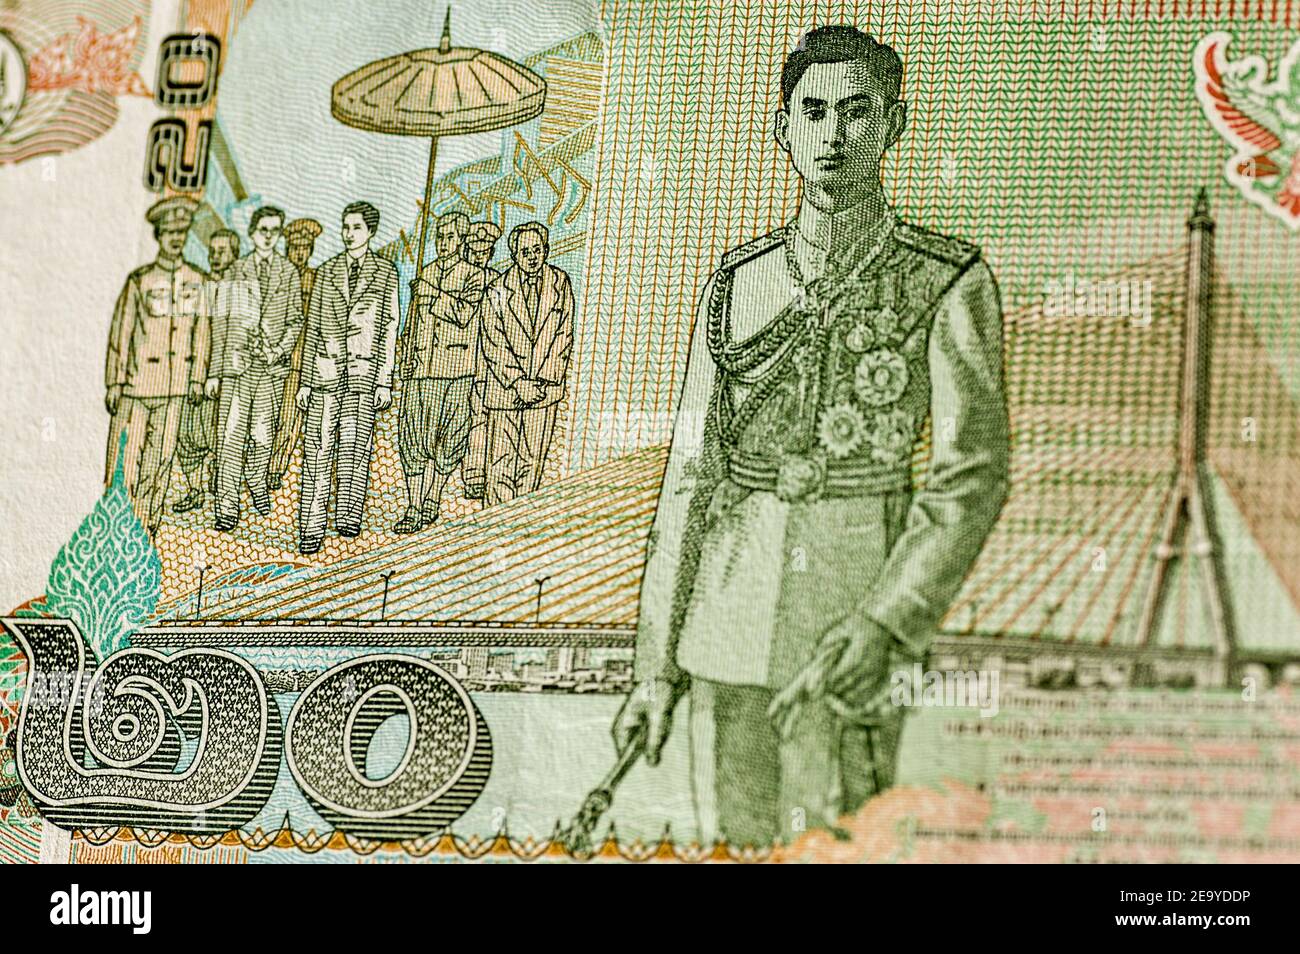 Banconota da 20 Baht che mostra sua Maestà il Re Ananda Mahidol, conosciuto come Re Rama VIII e un moderno ponte. Banconota usata, indicata in una Foto Stock